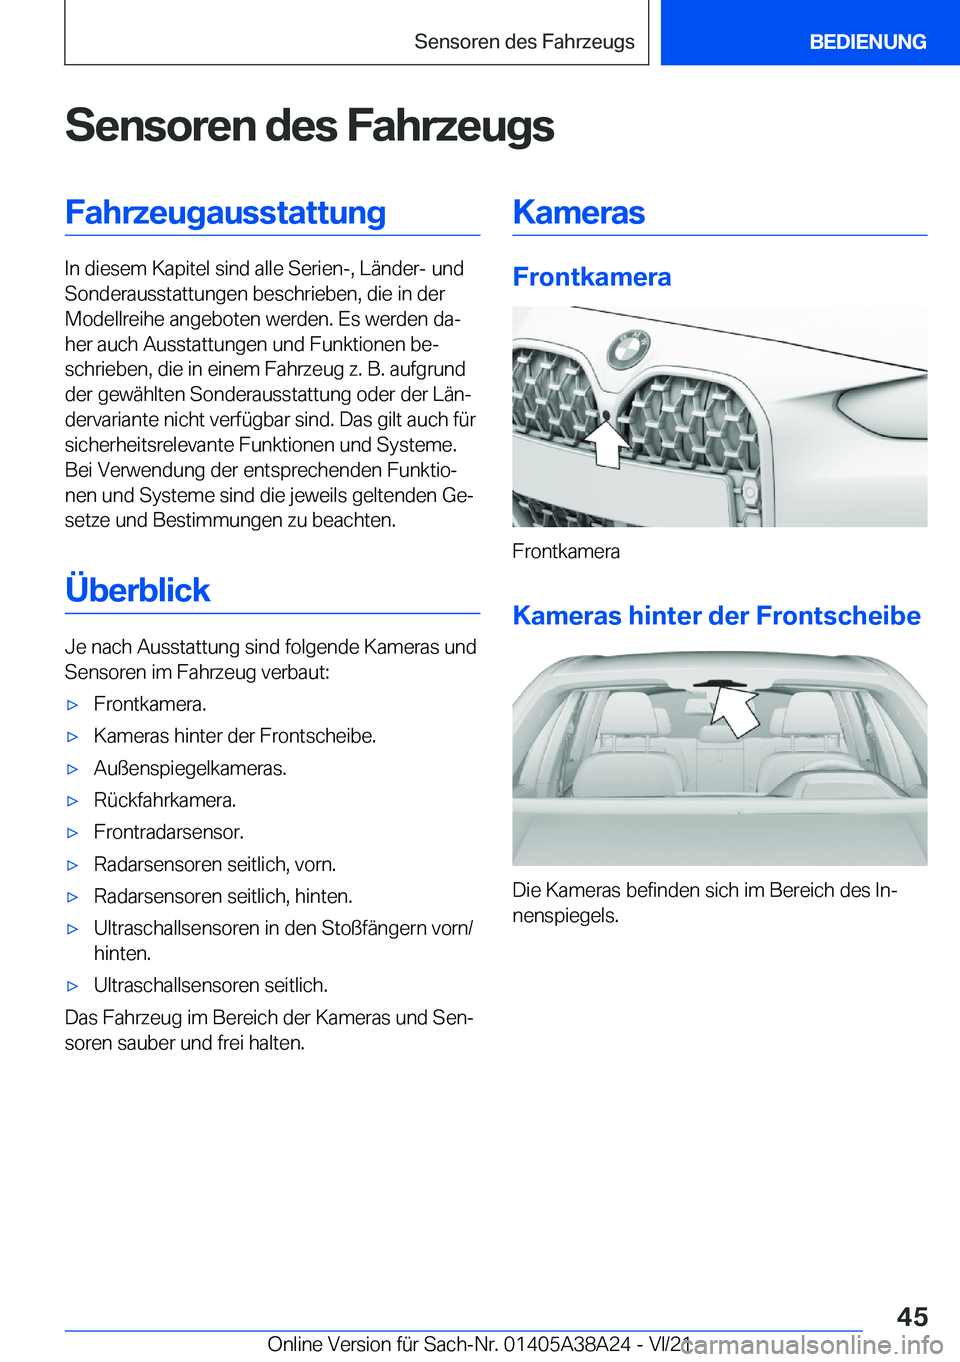 BMW 4 SERIES GRAN COUPE 2022  Betriebsanleitungen (in German) �S�e�n�s�o�r�e�n��d�e�s��F�a�h�r�z�e�u�g�s�F�a�h�r�z�e�u�g�a�u�s�s�t�a�t�t�u�n�g
�I�n��d�i�e�s�e�m��K�a�p�i�t�e�l��s�i�n�d��a�l�l�e��S�e�r�i�e�n�-�,��L�